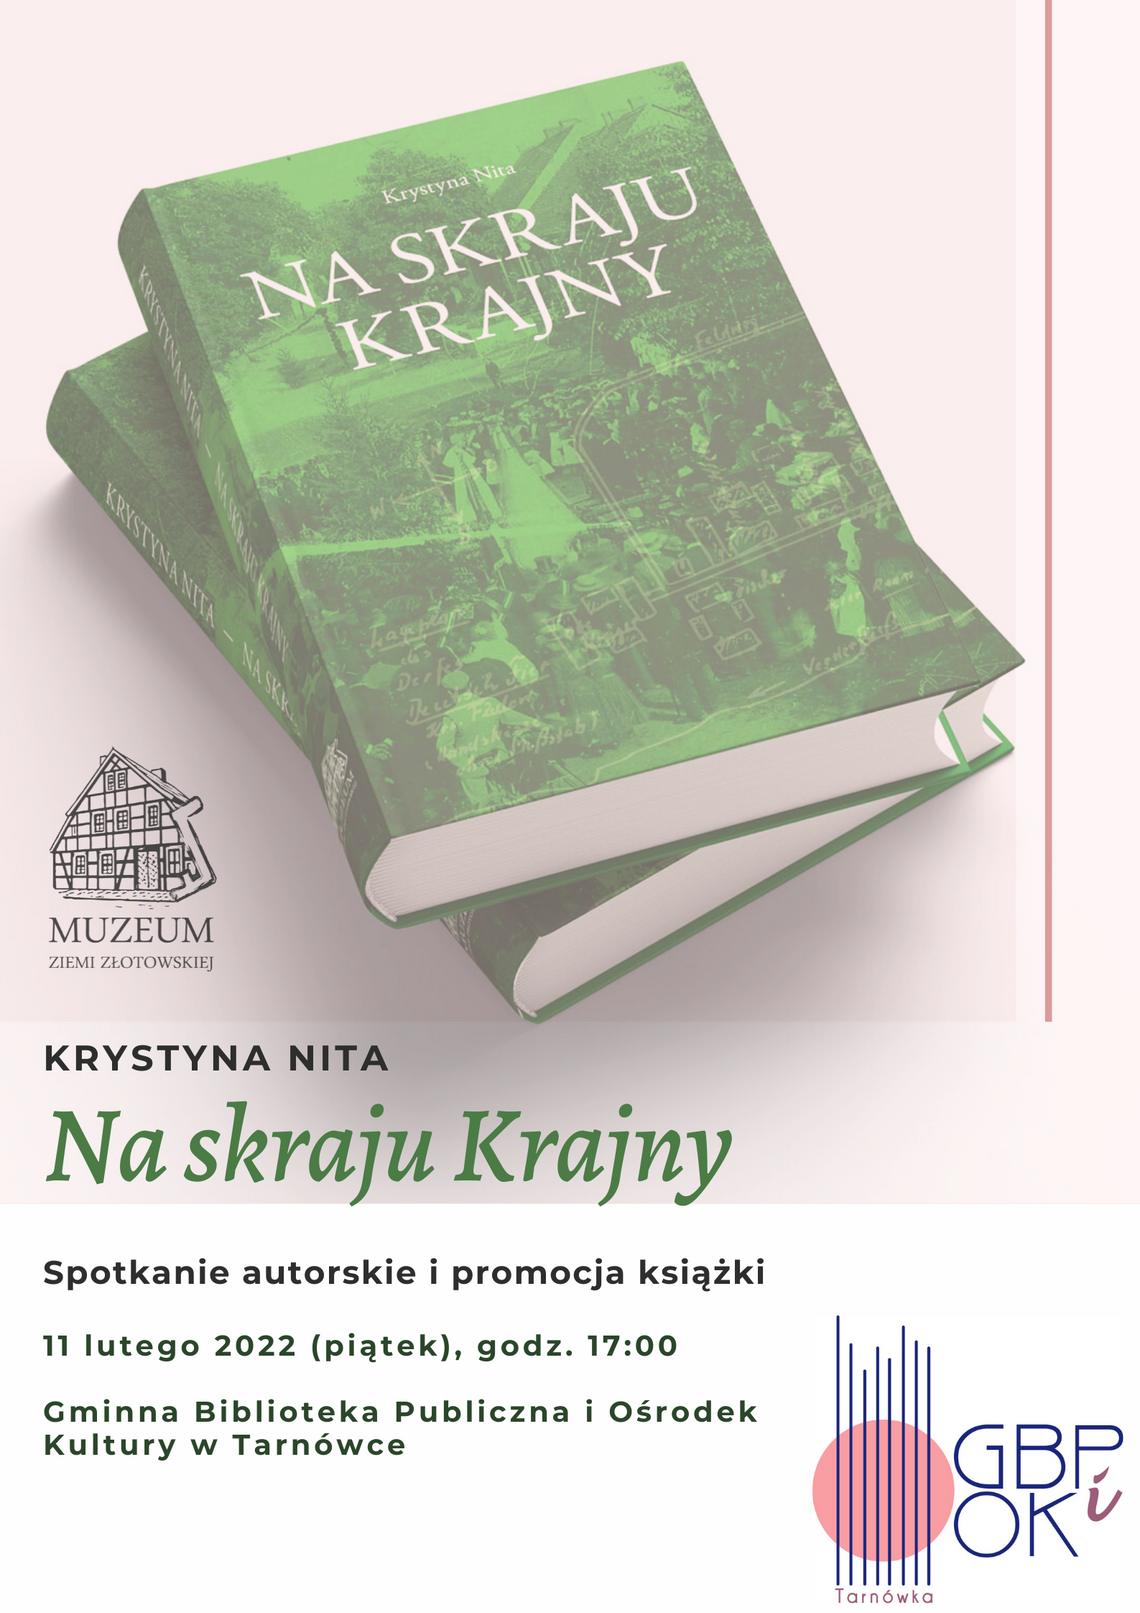 Promocja książki Krystyny Nity - zaproszenie!